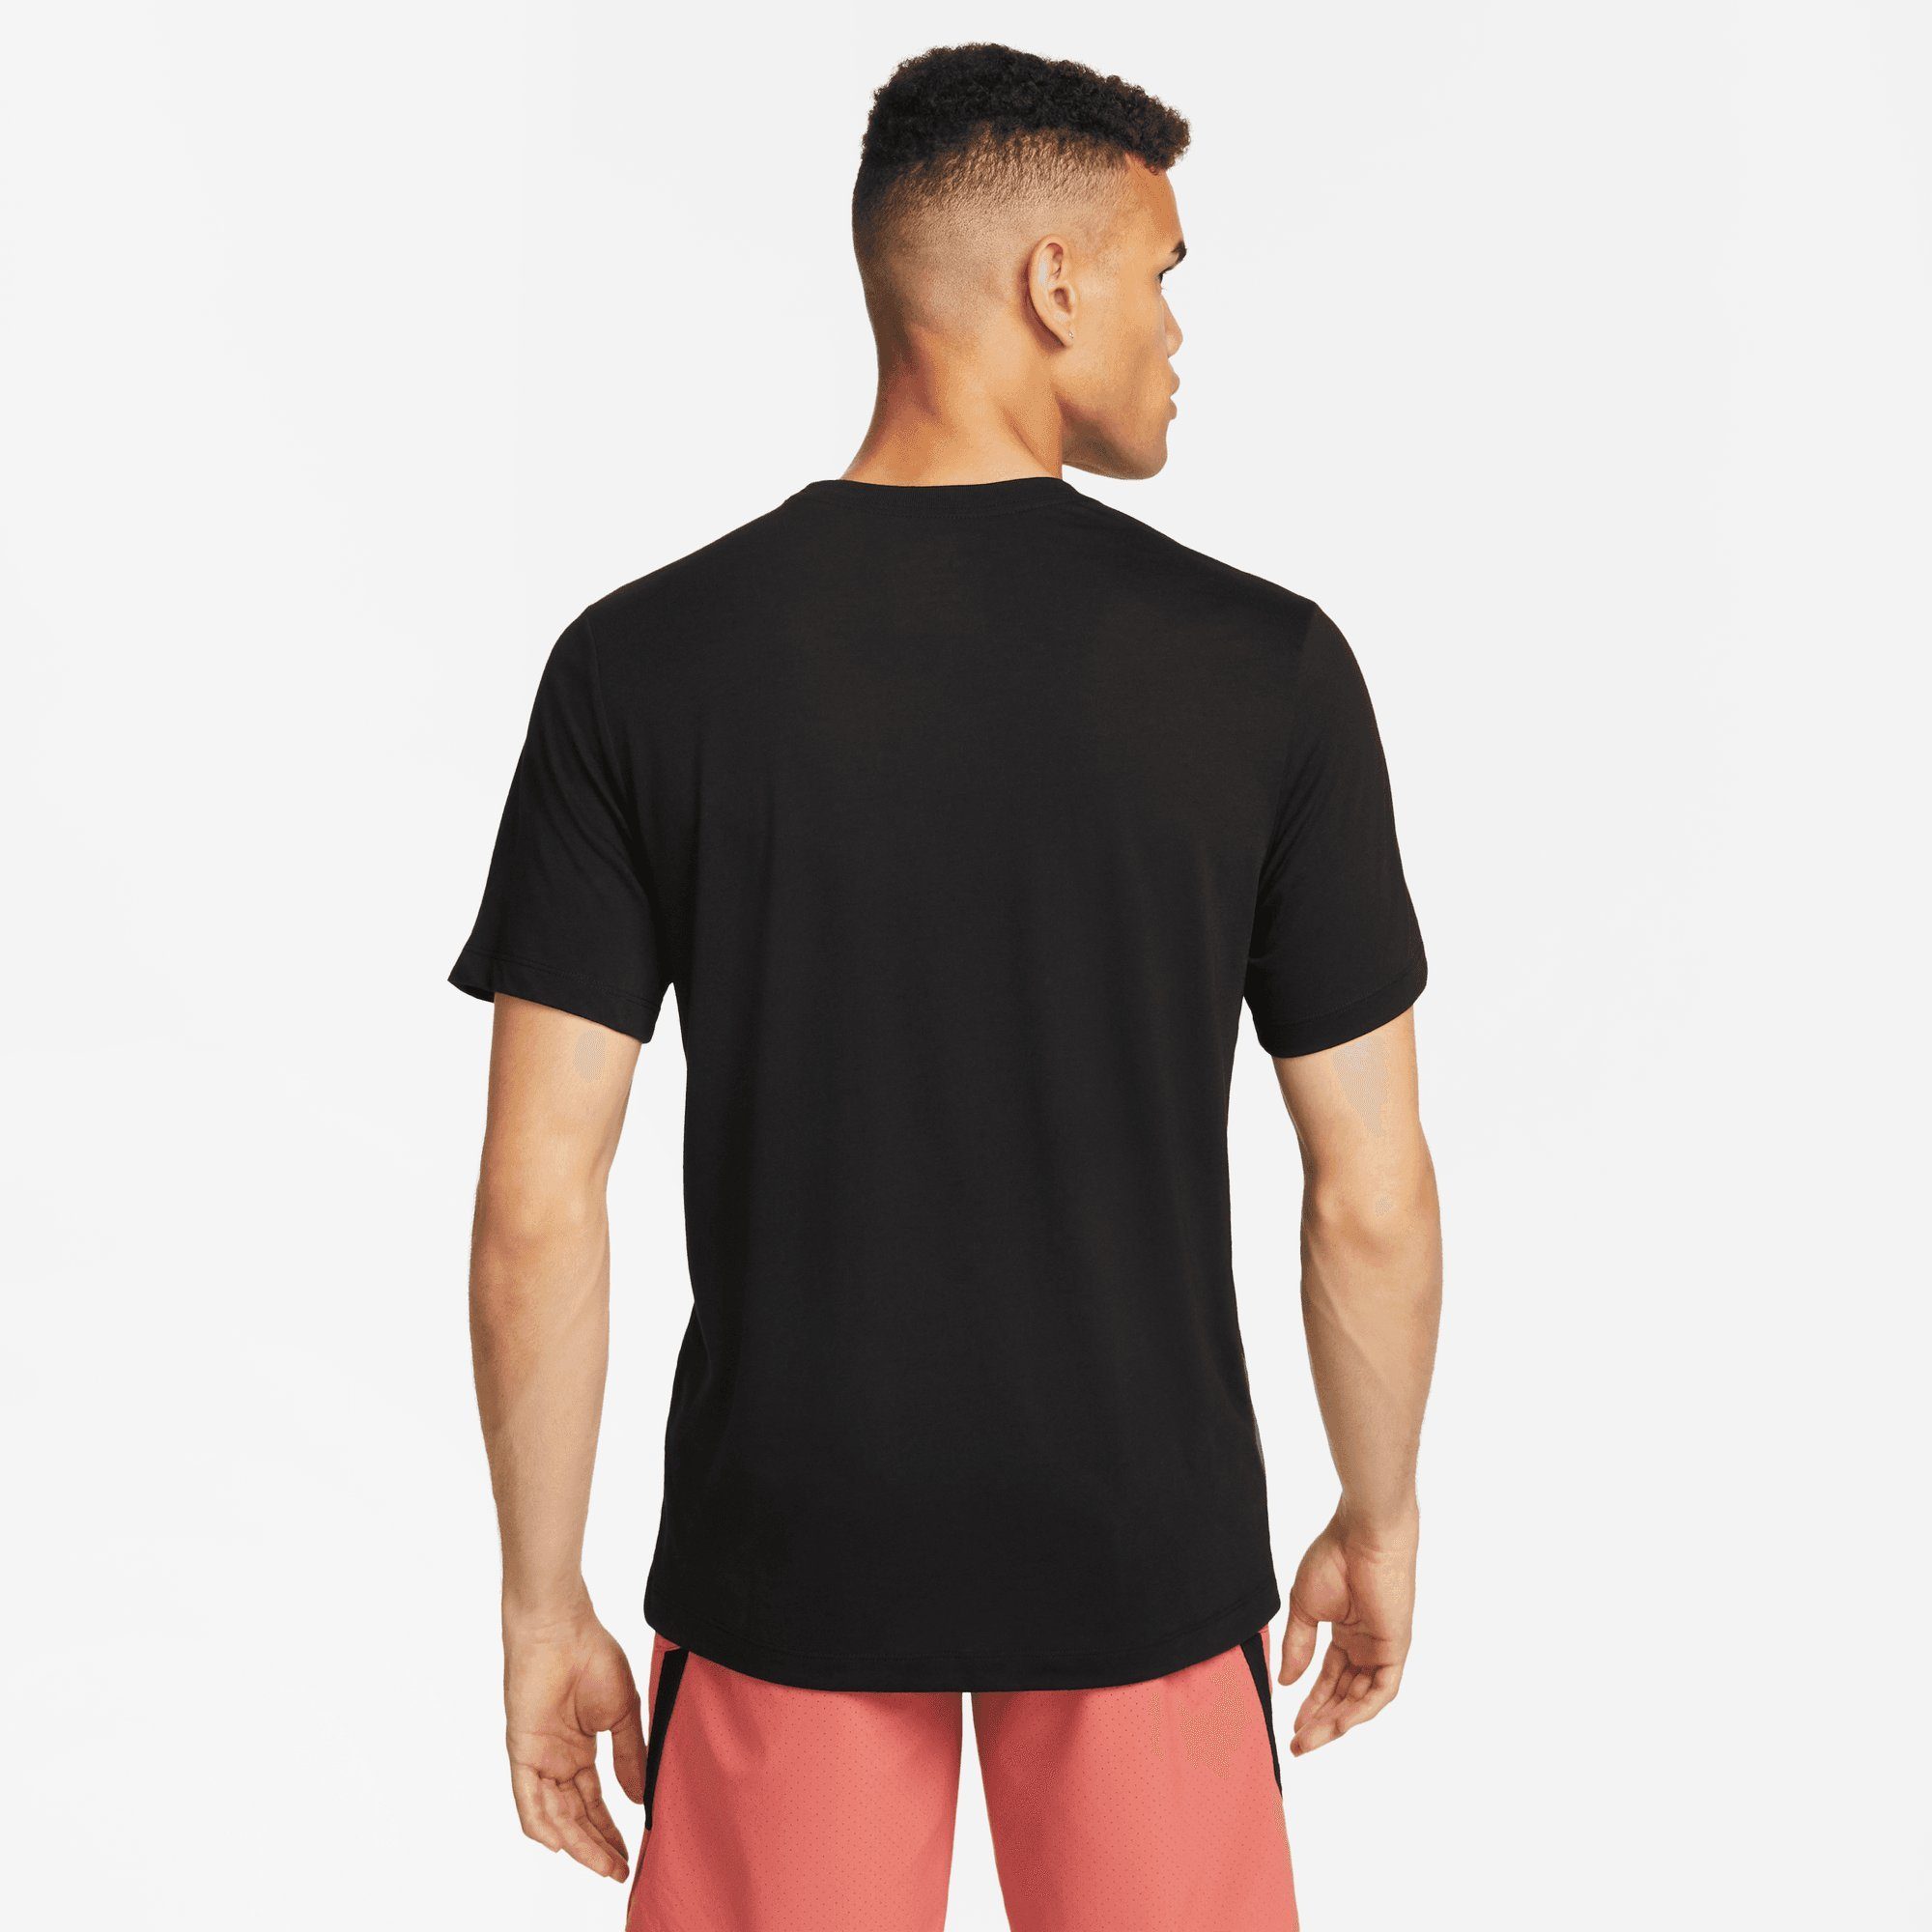 T-SHIRT Trainingsshirt BLACK DRI-FIT Nike MEN'S FITNESS